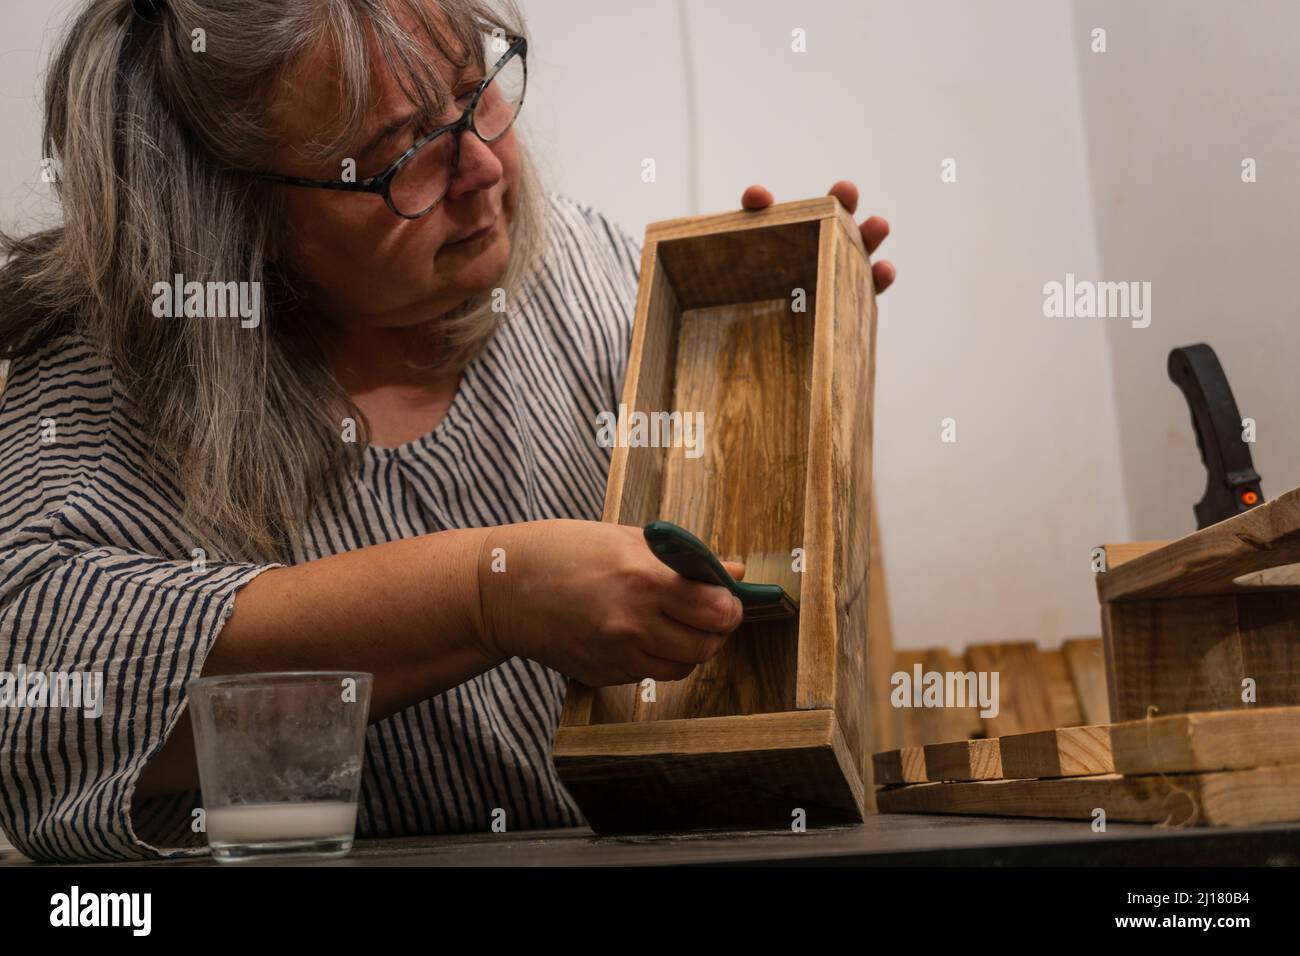 Weißhaarige Frau, die in ihrer Werkstatt für recyceltes Holz mit verschiedenen Werkzeugen und ökologischen Materialien arbeitet.Holz lackieren Stockfoto